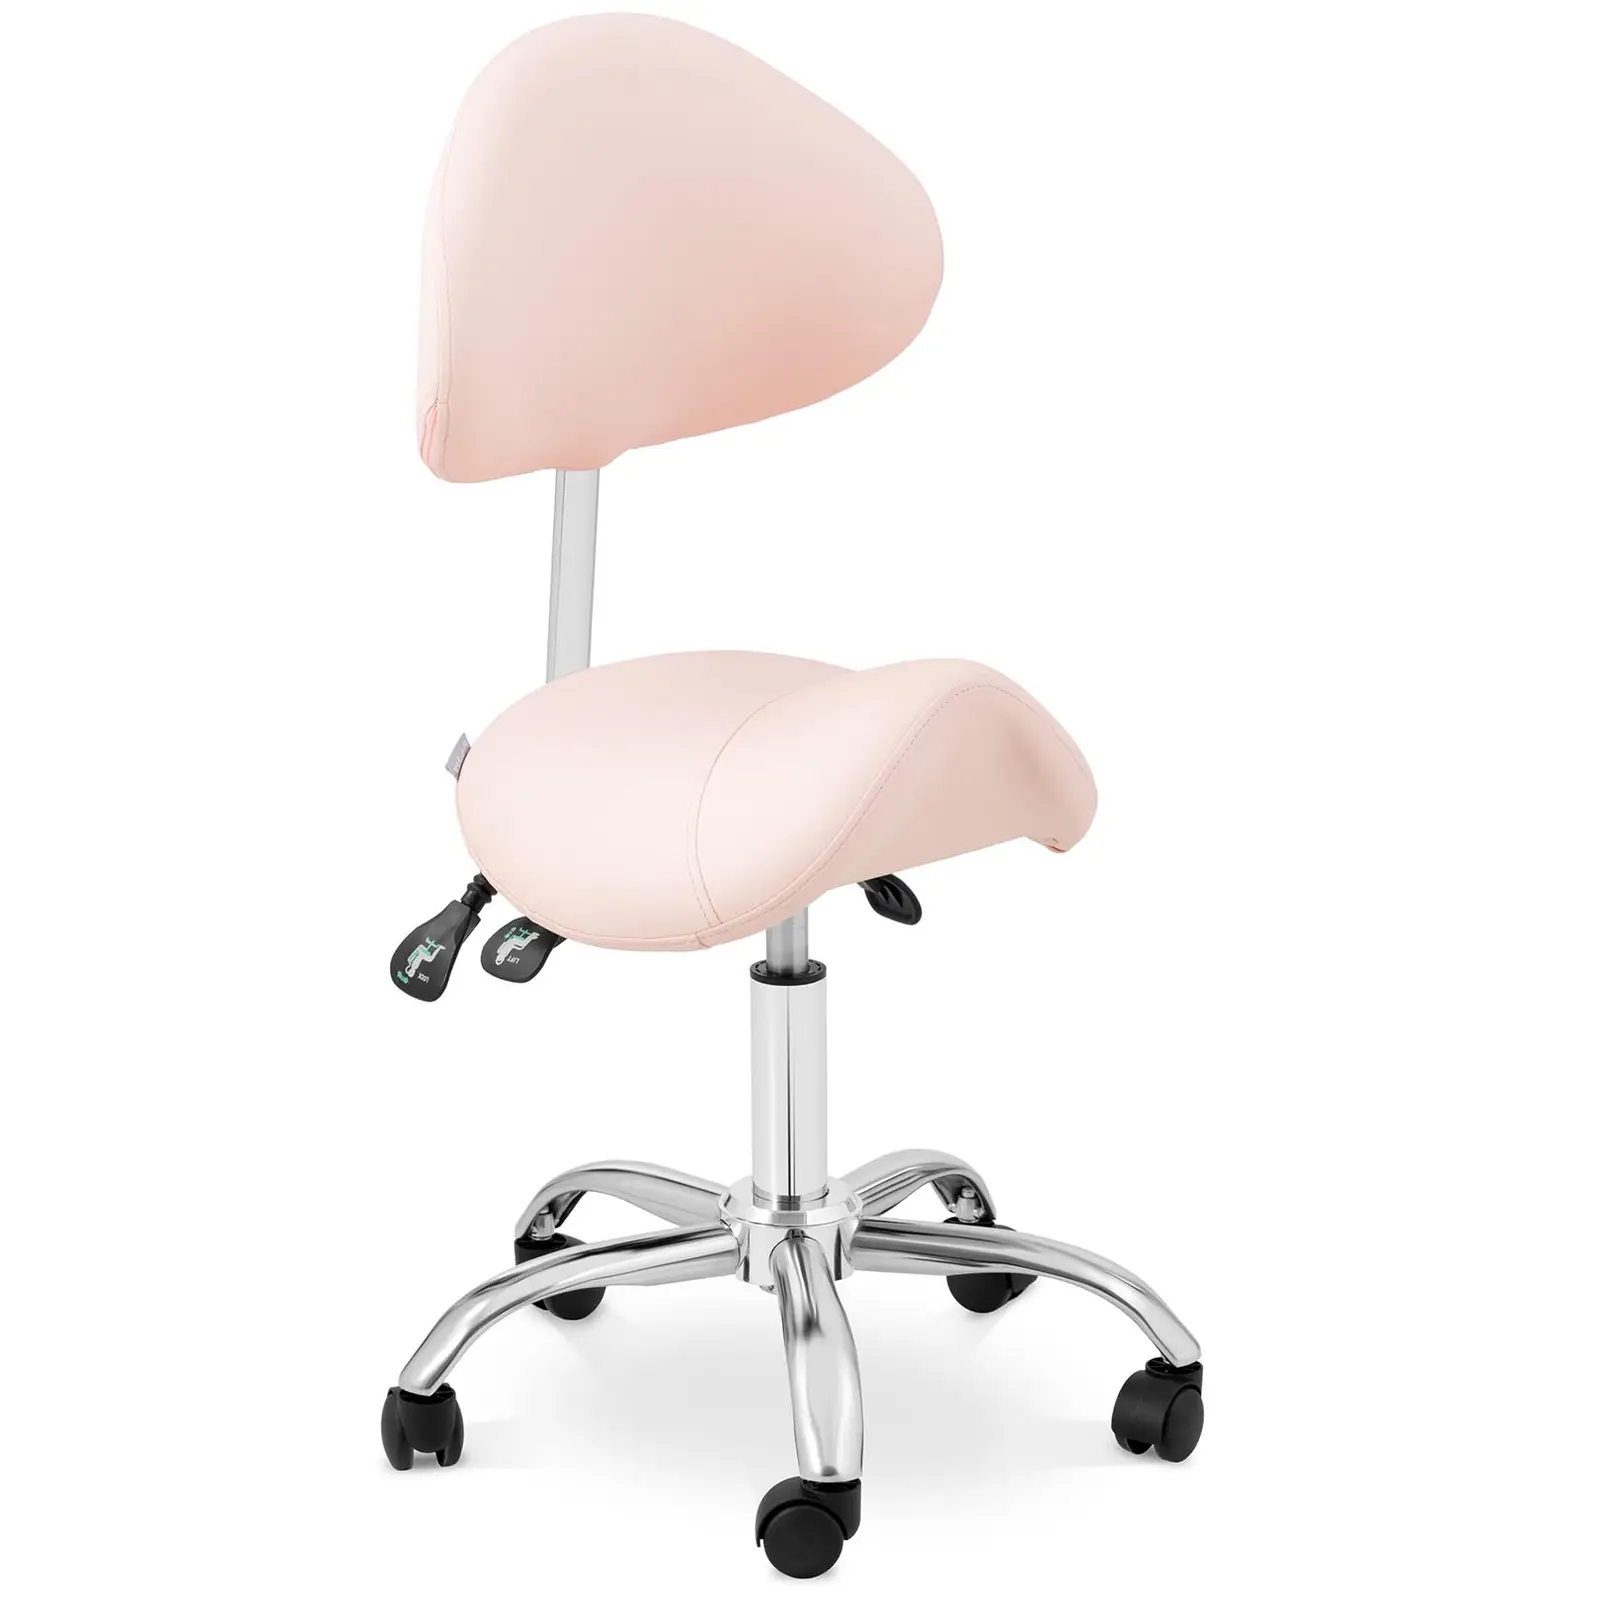 Sadelstol - høydejusterbar ryggstøtte og setehøyde - 55 - 69 cm - 150 kg - Pink, Silver